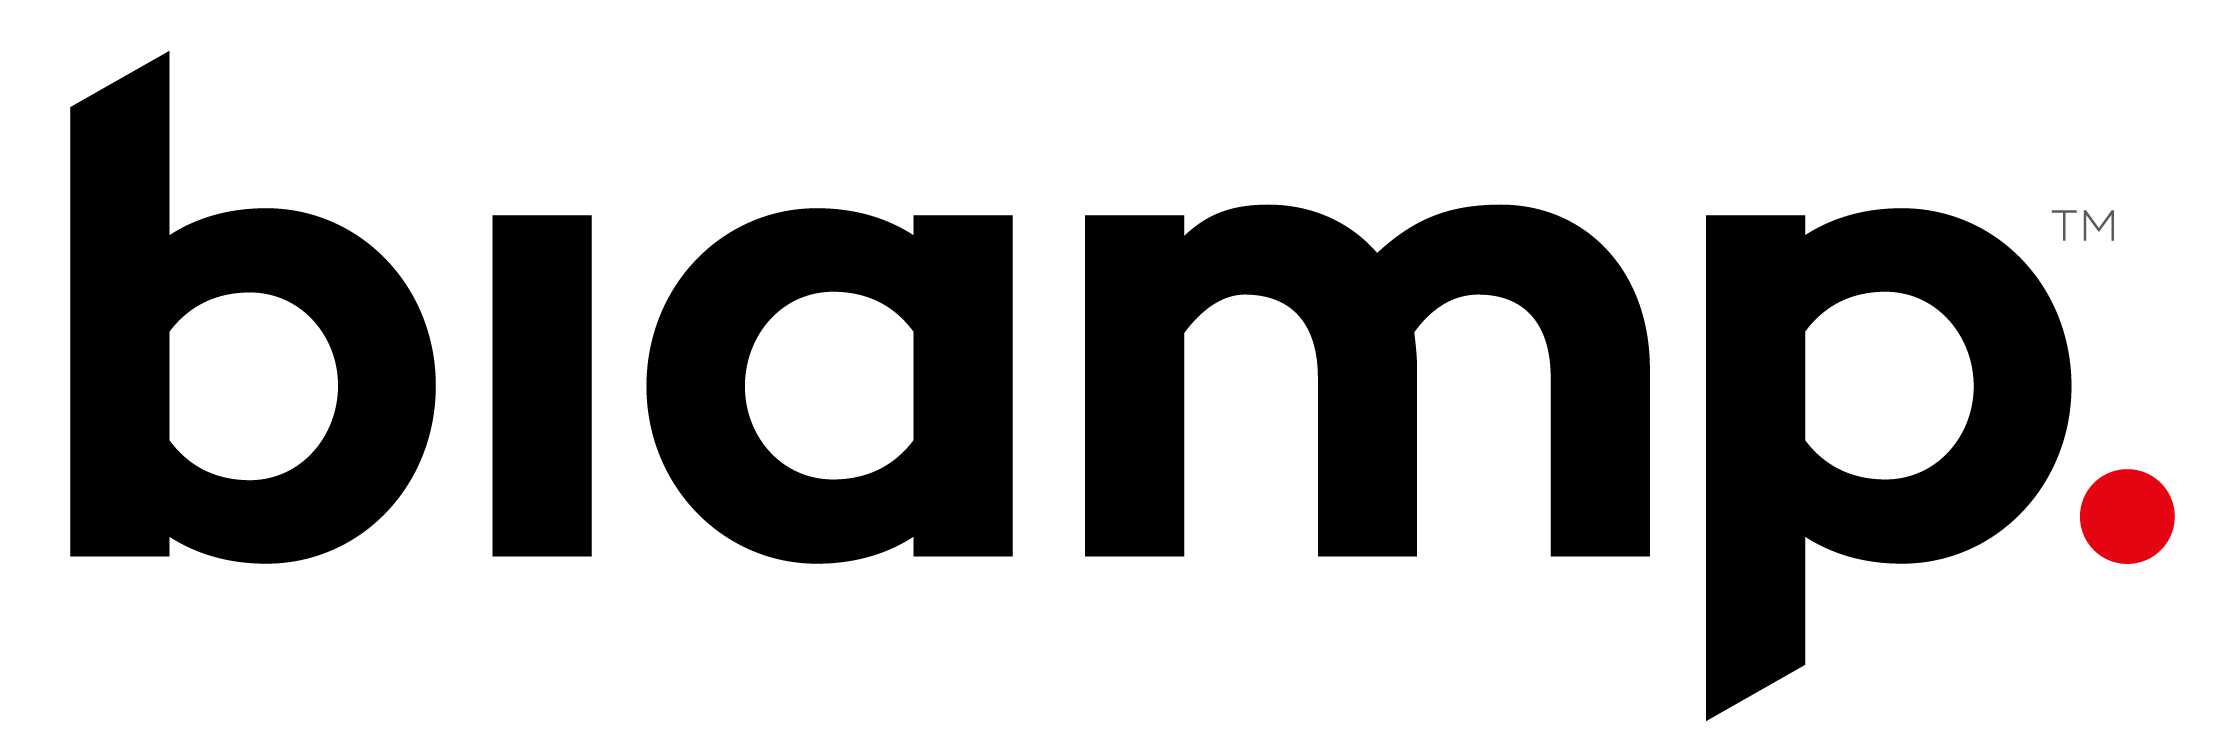 Biamp_Logo_Black_Red